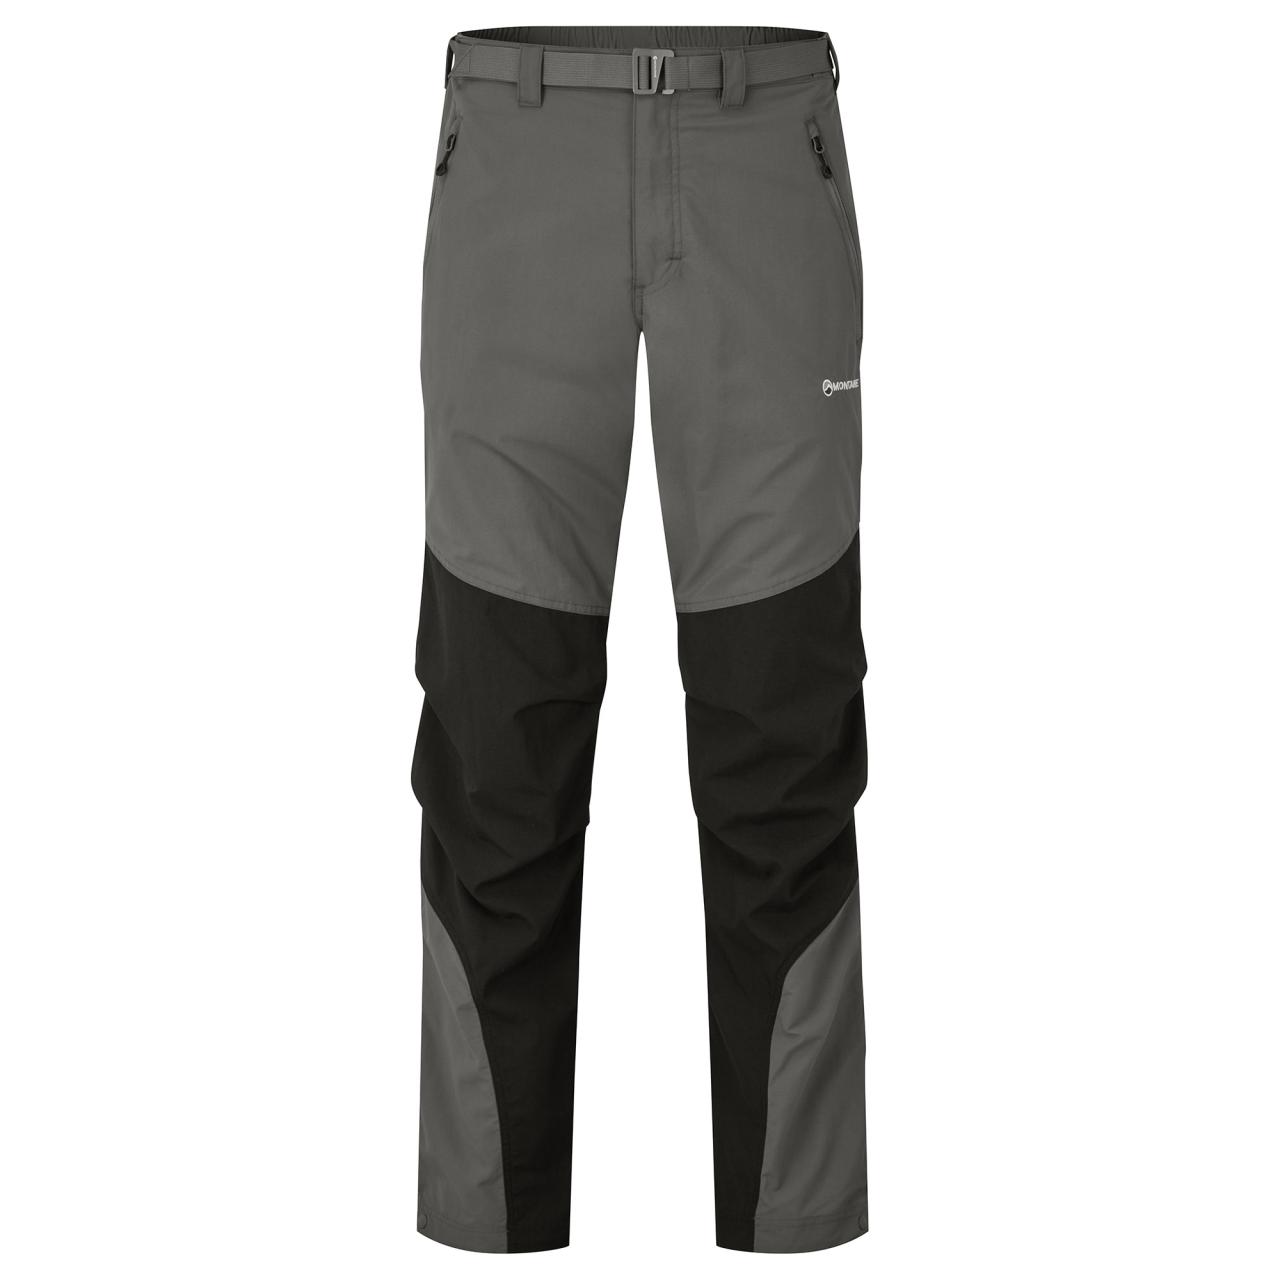 TERRA PANTS REG LEG-GRAPHITE-40/XXXL pánské kalhoty šedé